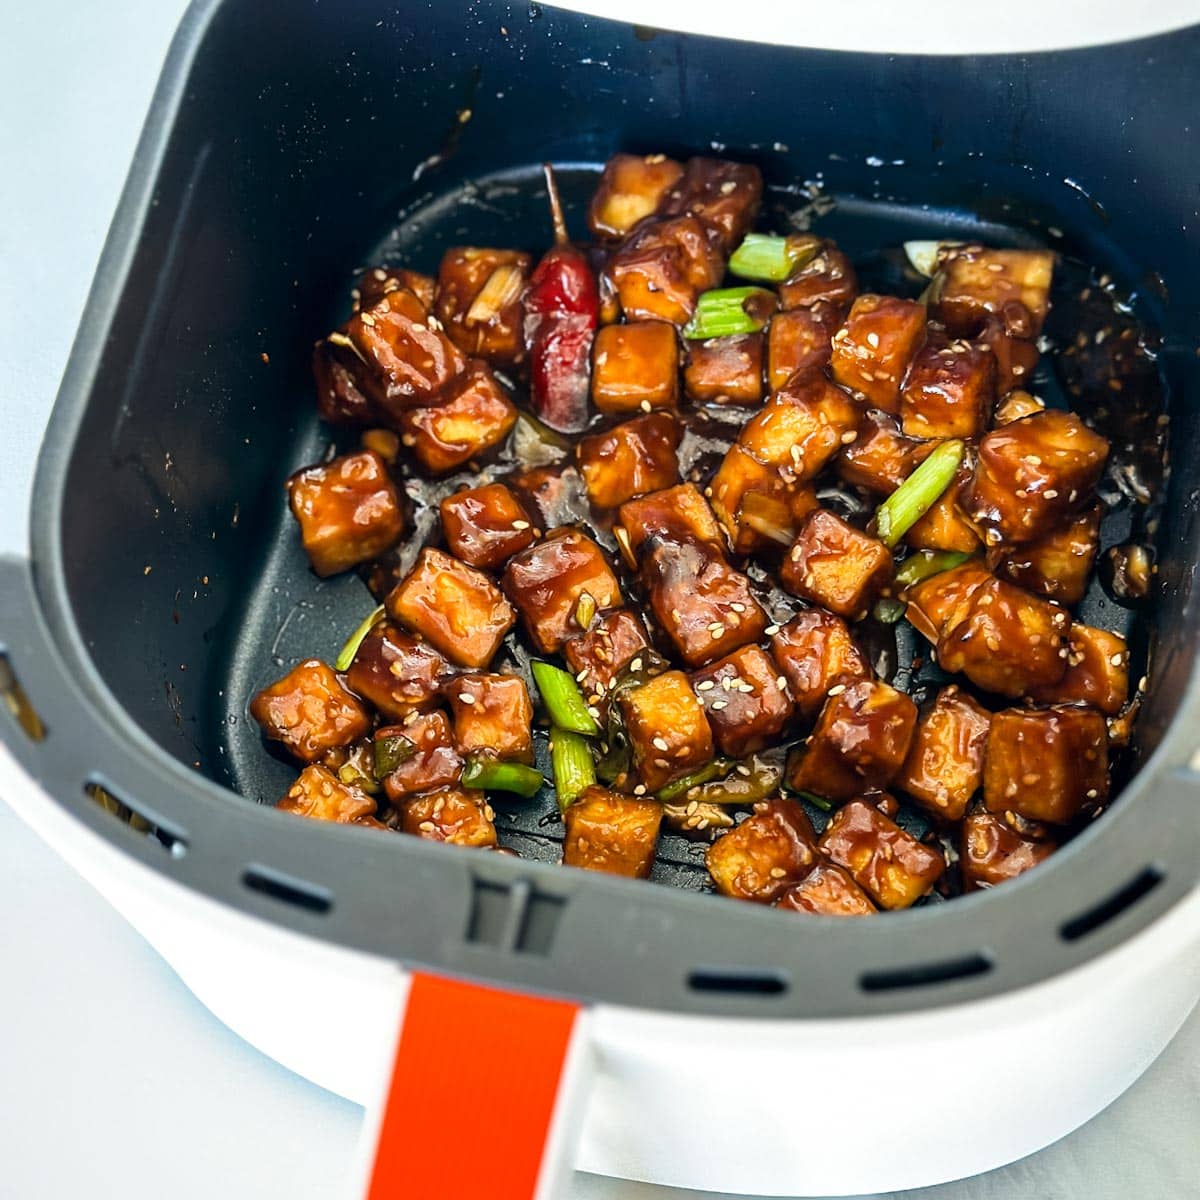 tofu Général Tao dans le panier du air fryer, bien grillé avec sauce